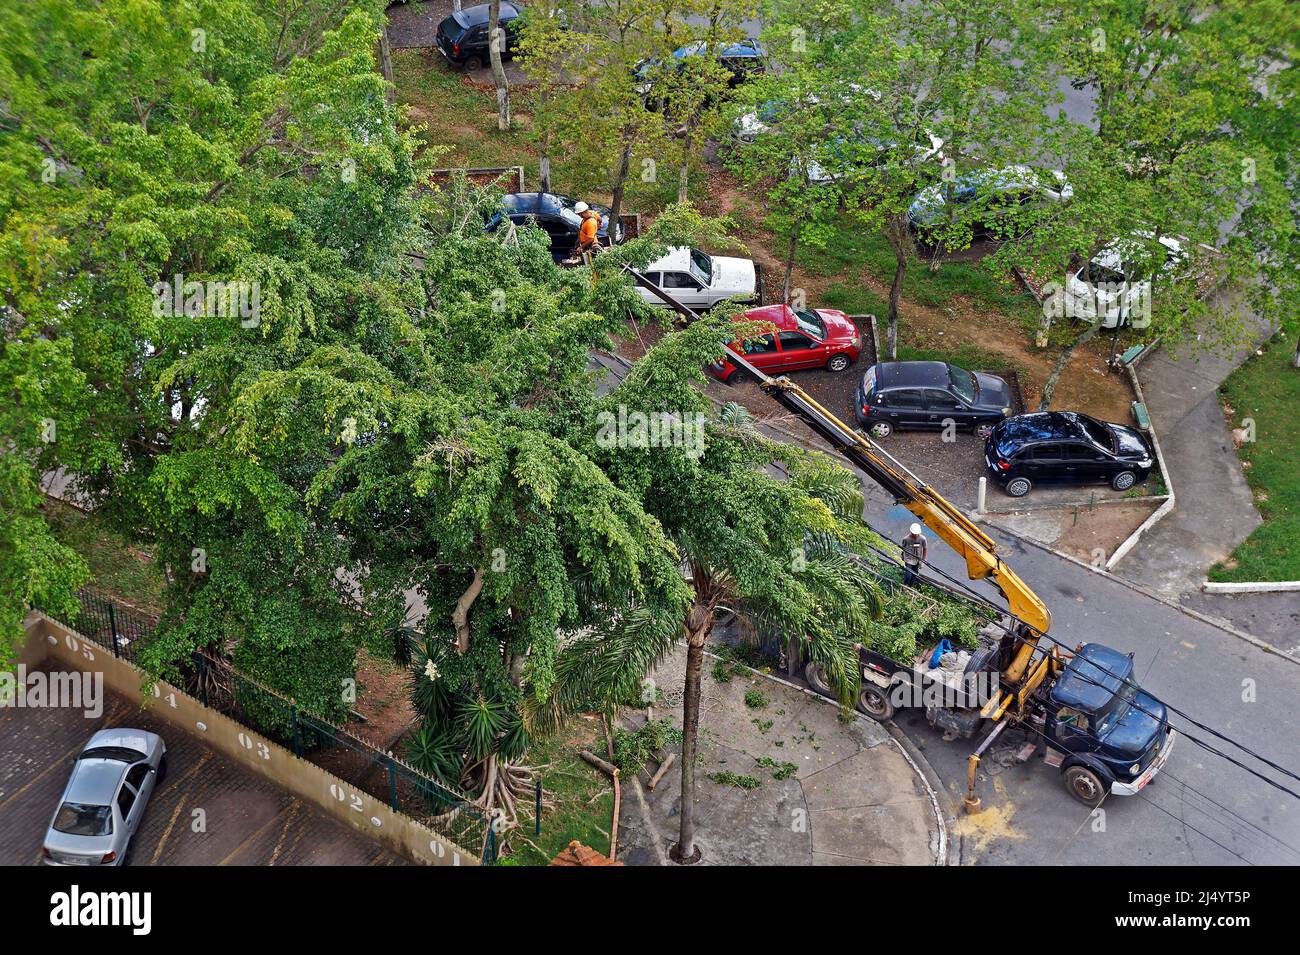 RÍO DE JANEIRO, BRASIL - 22 DE FEBRERO de 2021: Trabajador de servicio que poda ramas de árboles en una plataforma de un camión grúa Foto de stock